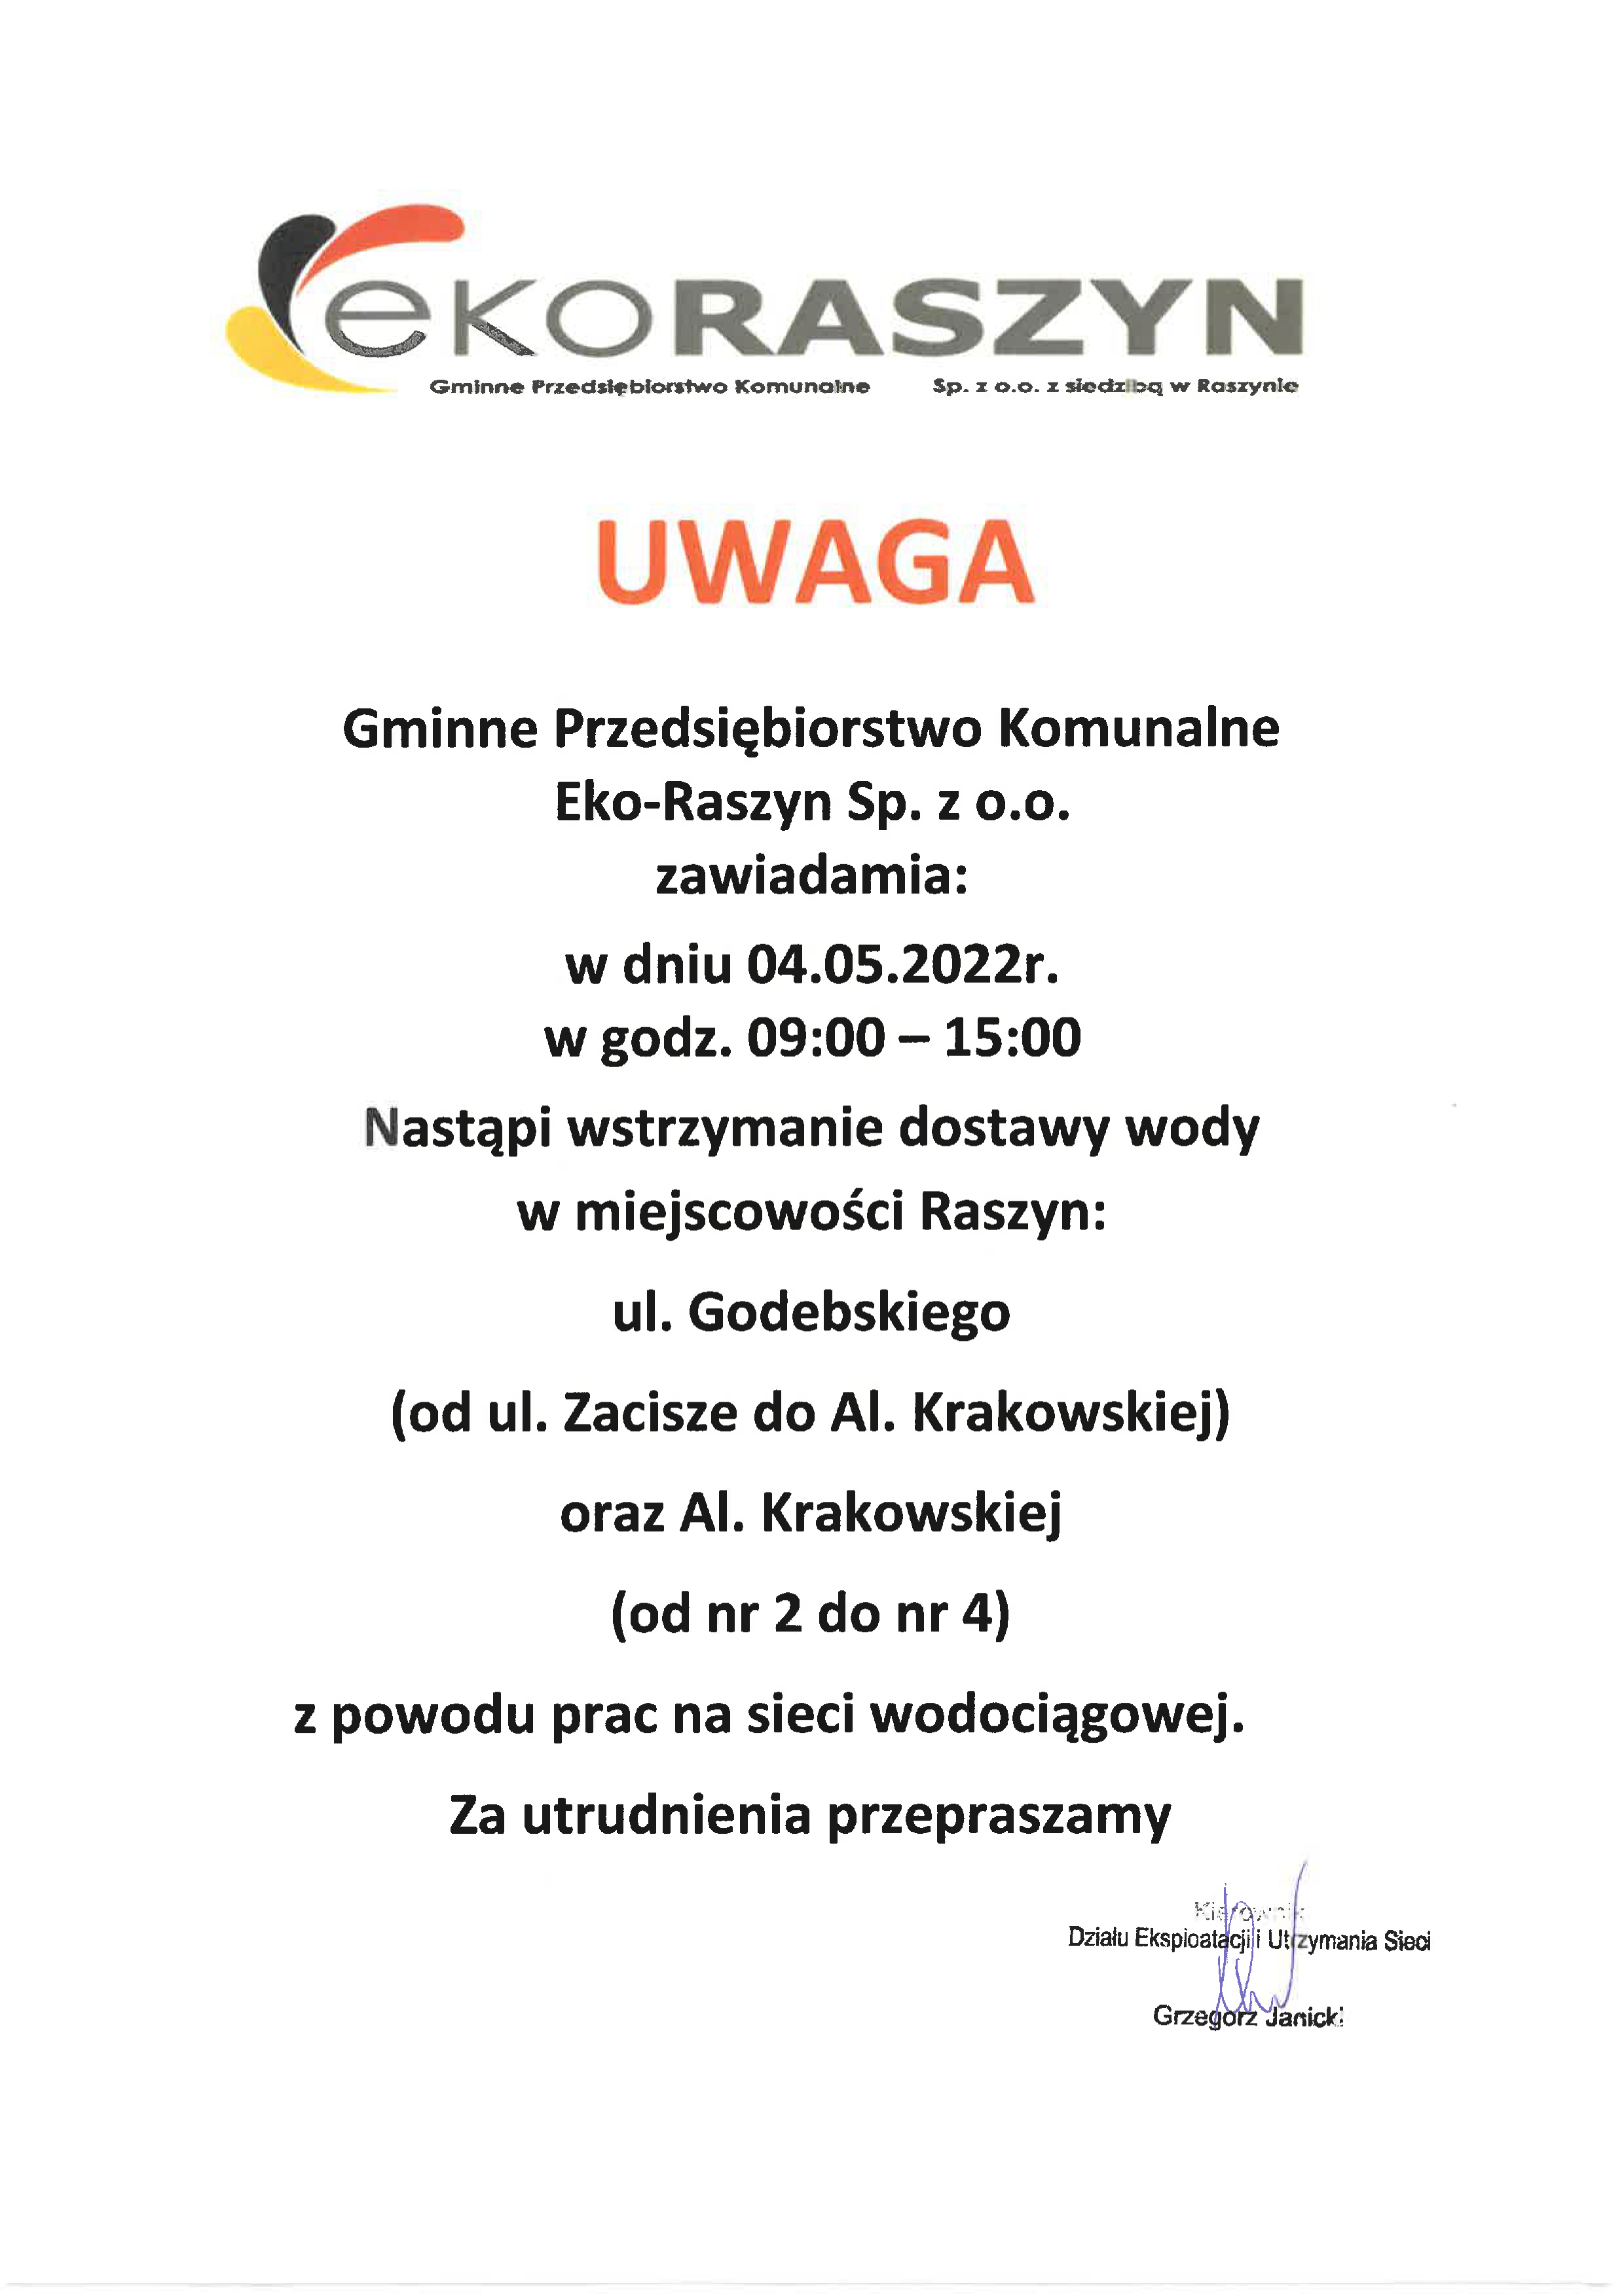 Skan dokumentu: Komunikat wstrzymania dostaw wody w dniu 04.05.2022 godz. 9 - 15 dla ulic ul. Godebskiego (od ul. Zacisze do Al. Krakowskiej) oraz Al. Krakowskiej (od nr 2 do nr 4) 